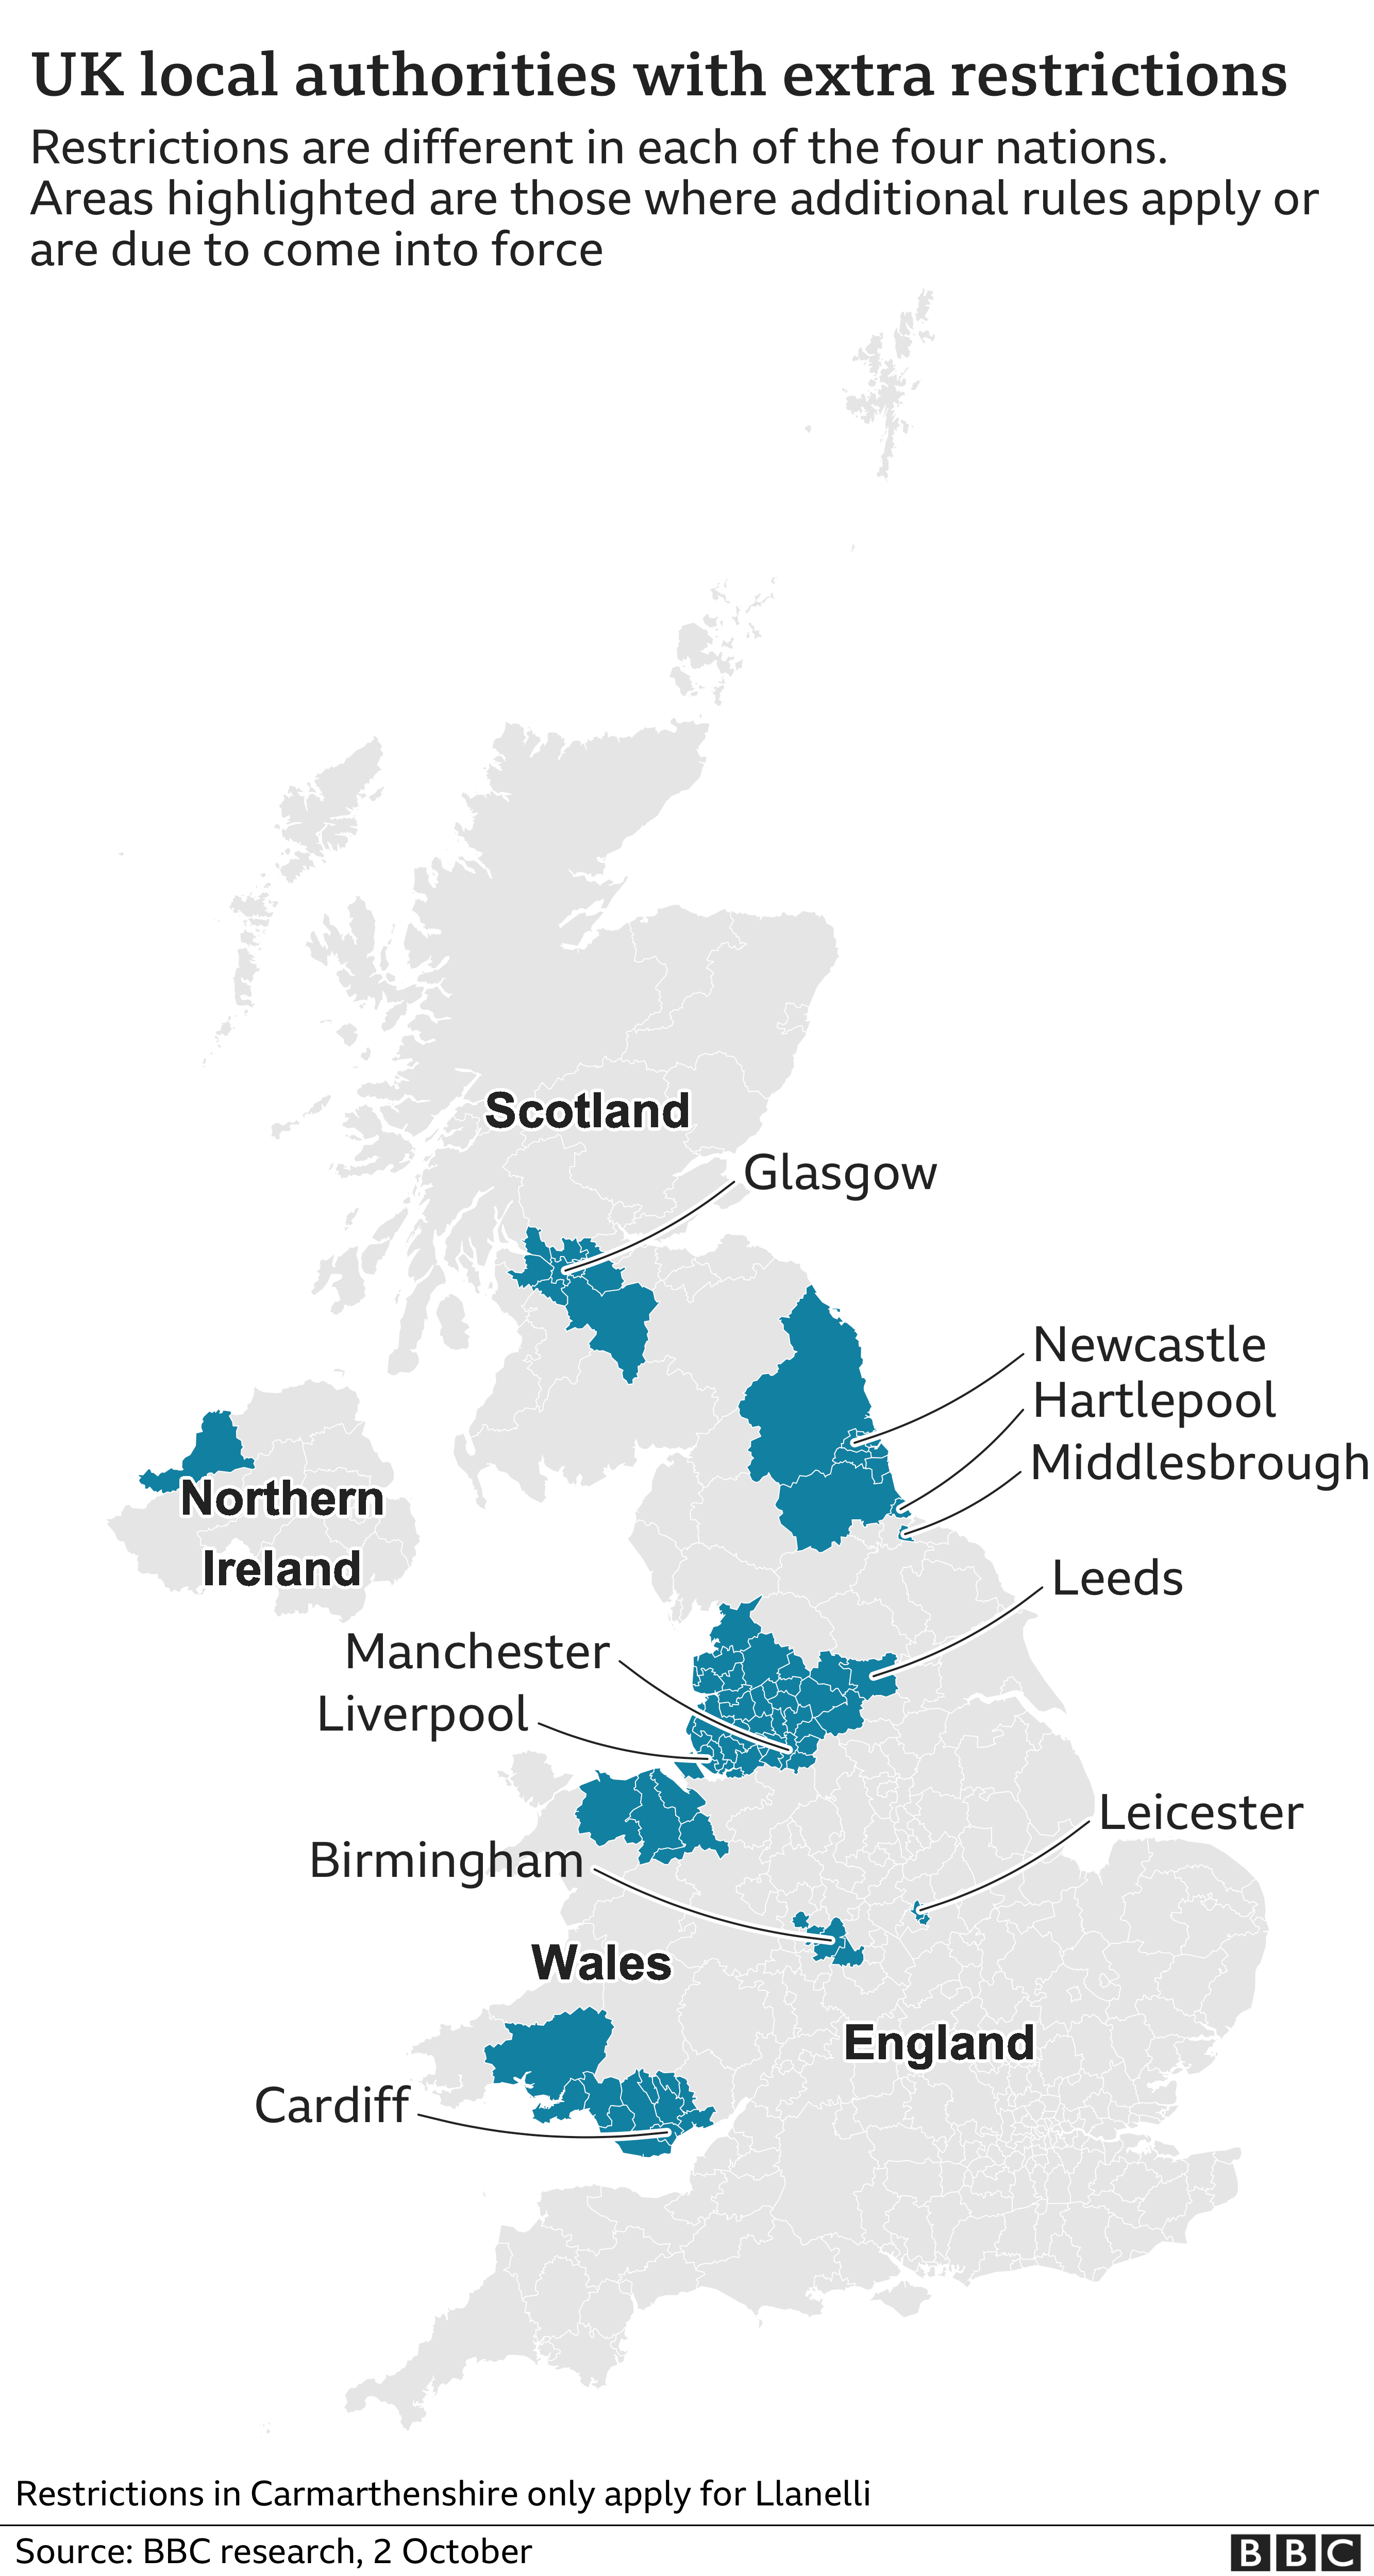 Карта, показывающая районы Великобритании с дополнительными местными ограничениями. Обновлено 2 октября.